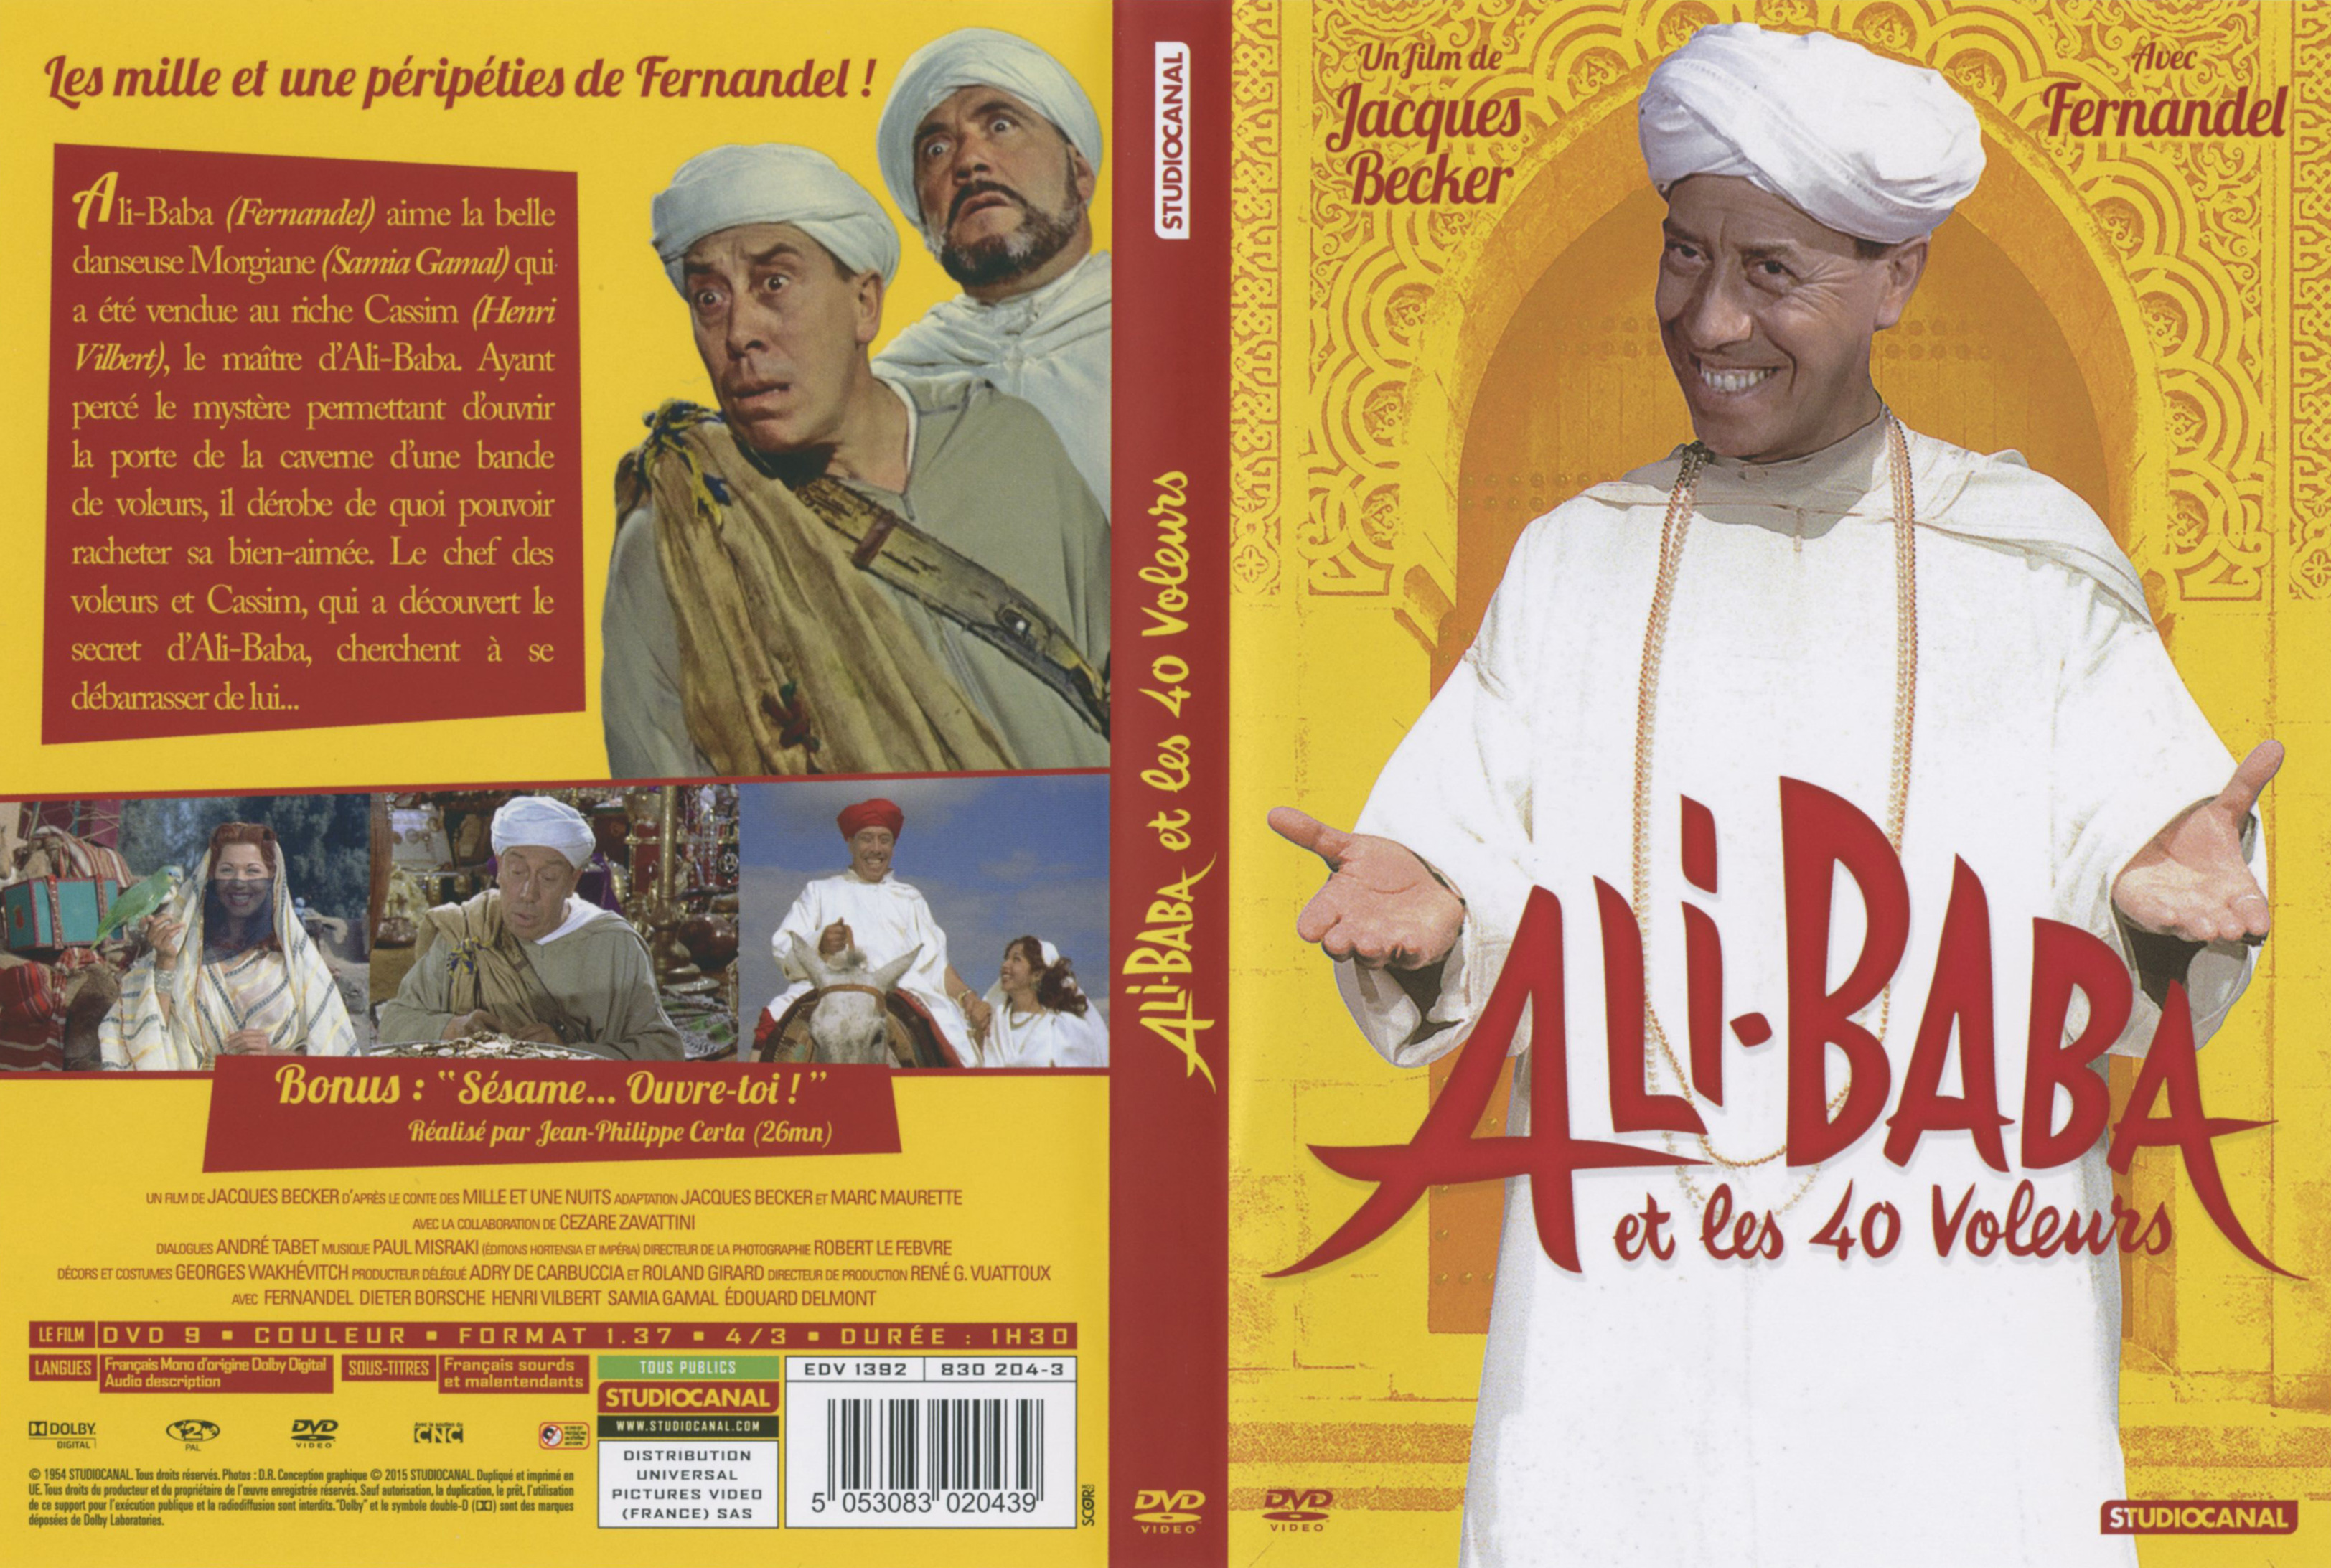 Jaquette DVD de Ali baba et les 40 voleurs v4 - Cinéma Passion